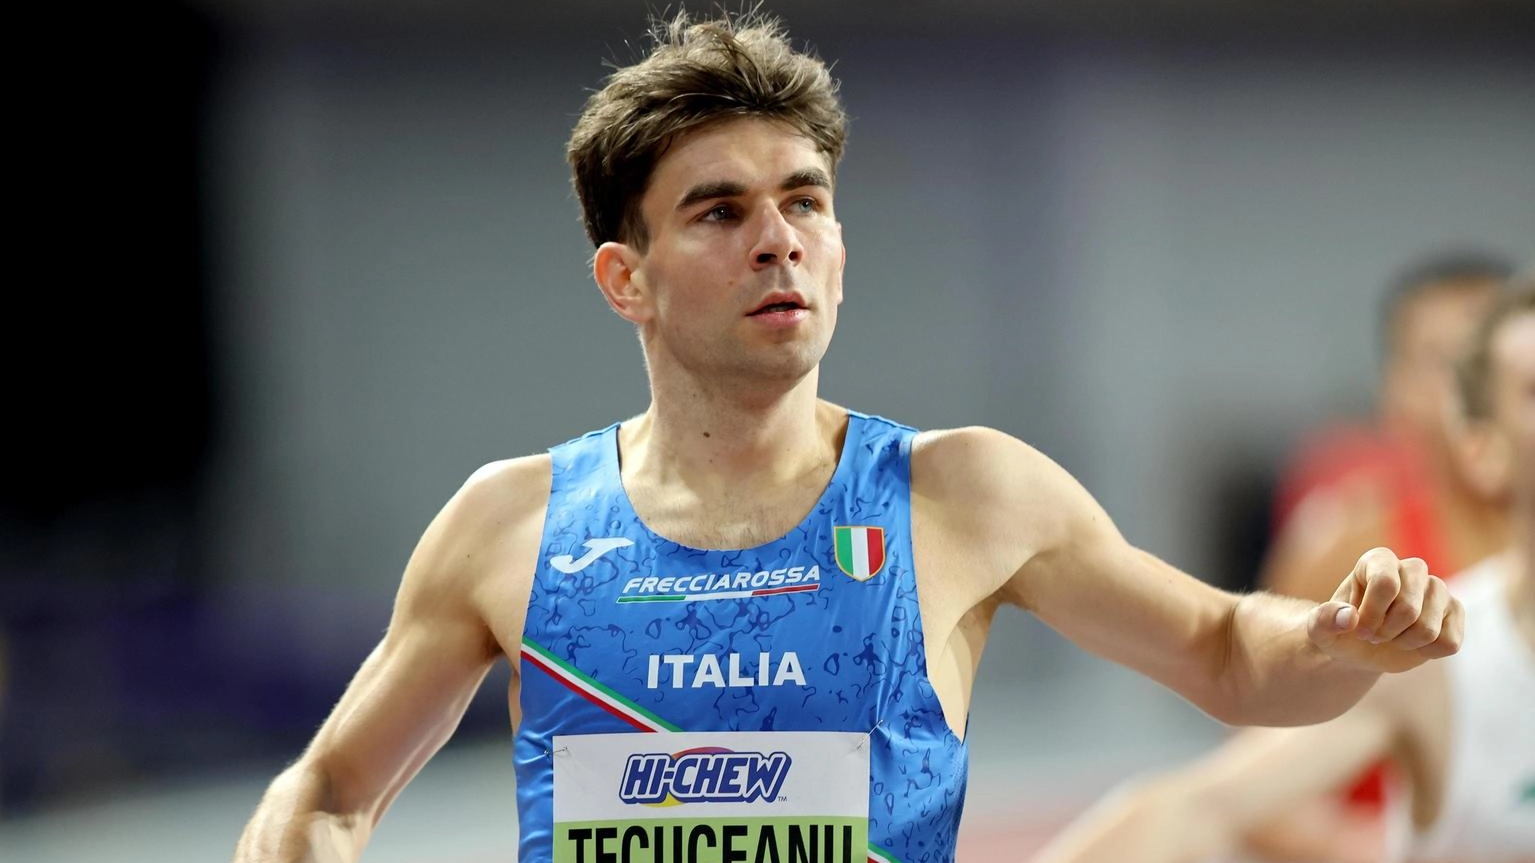 Europei atletica: bronzo per Tecuceanu negli 800m